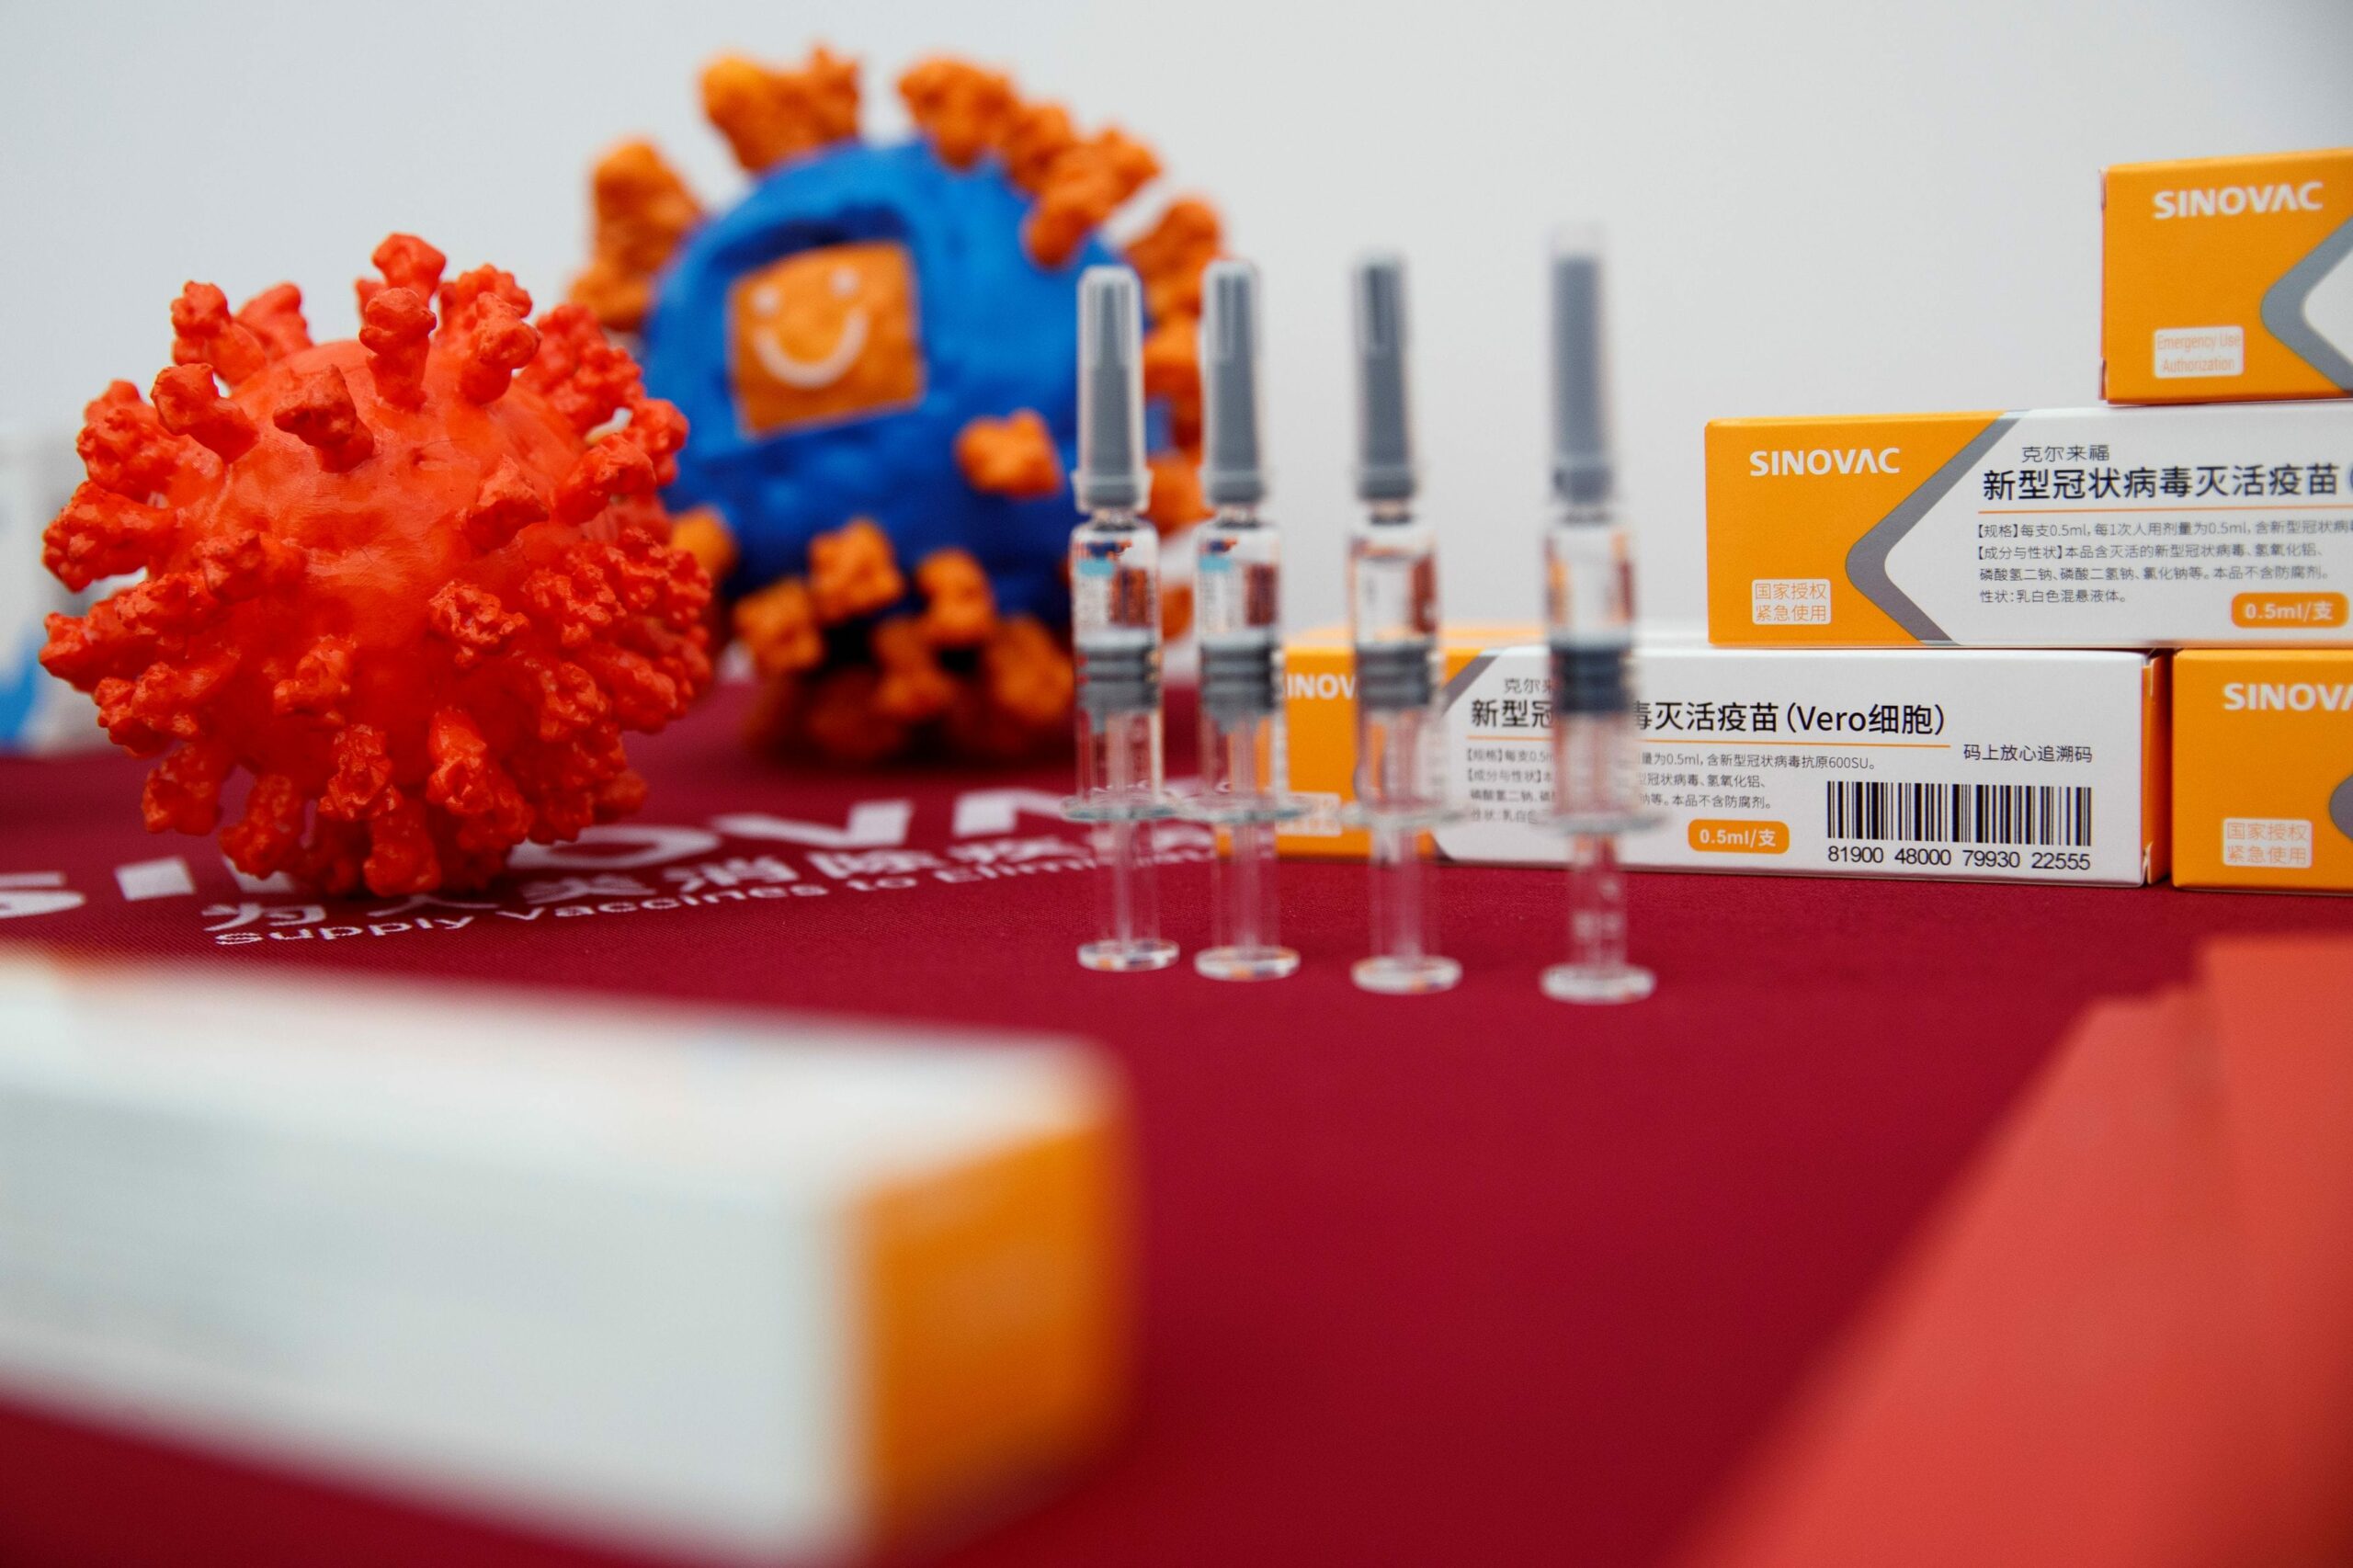 МОЗ уклав договір на поставку китайської вакцини